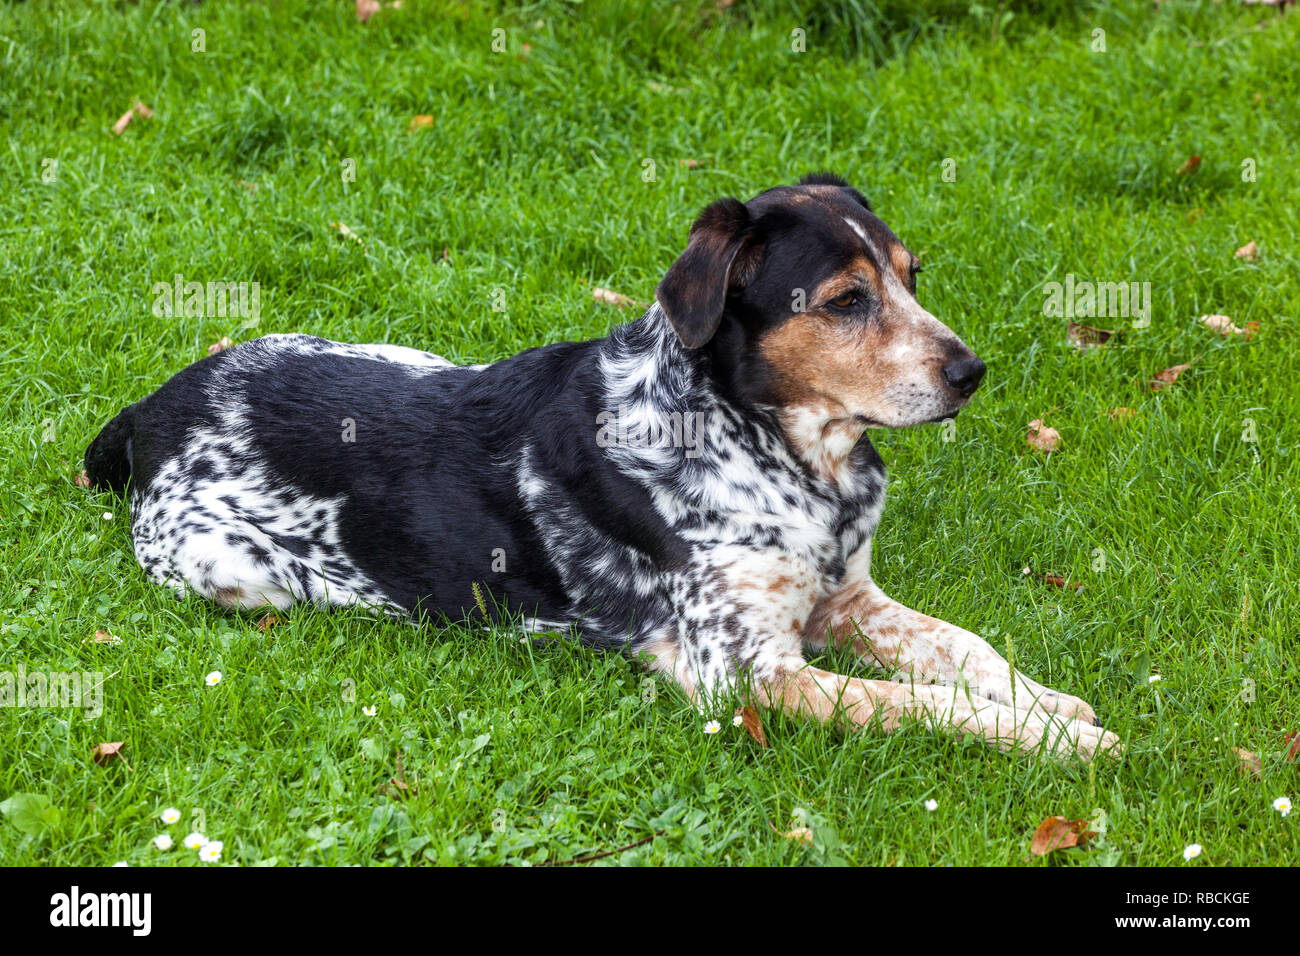 Tschechische Rasse böhmischen Hund beschmutzt liegen auf Gras im Garten  Stockfotografie - Alamy